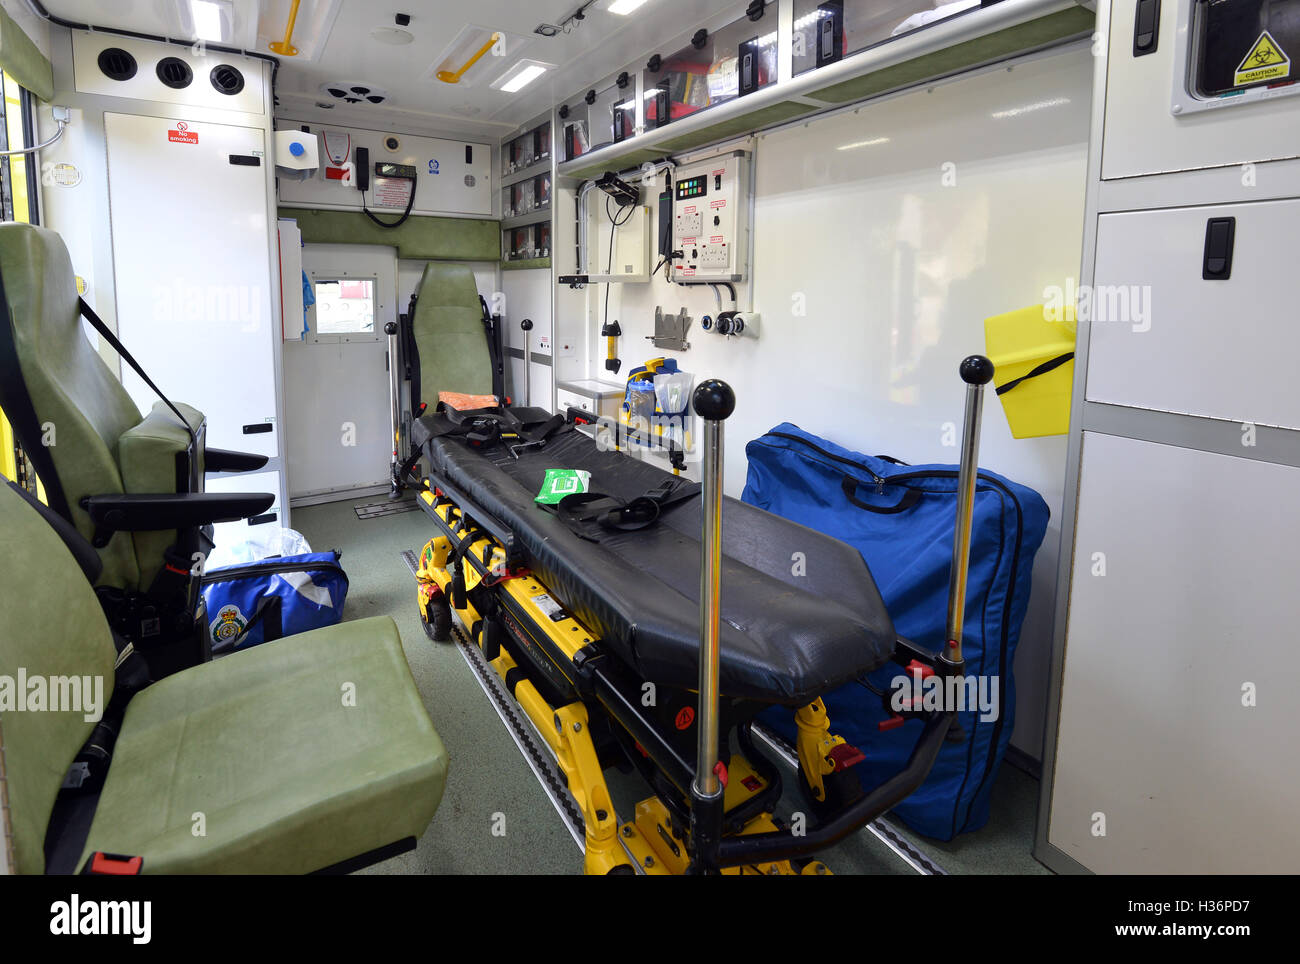 Interior Of A Uk Ambulance Stock Photo 122465875 Alamy